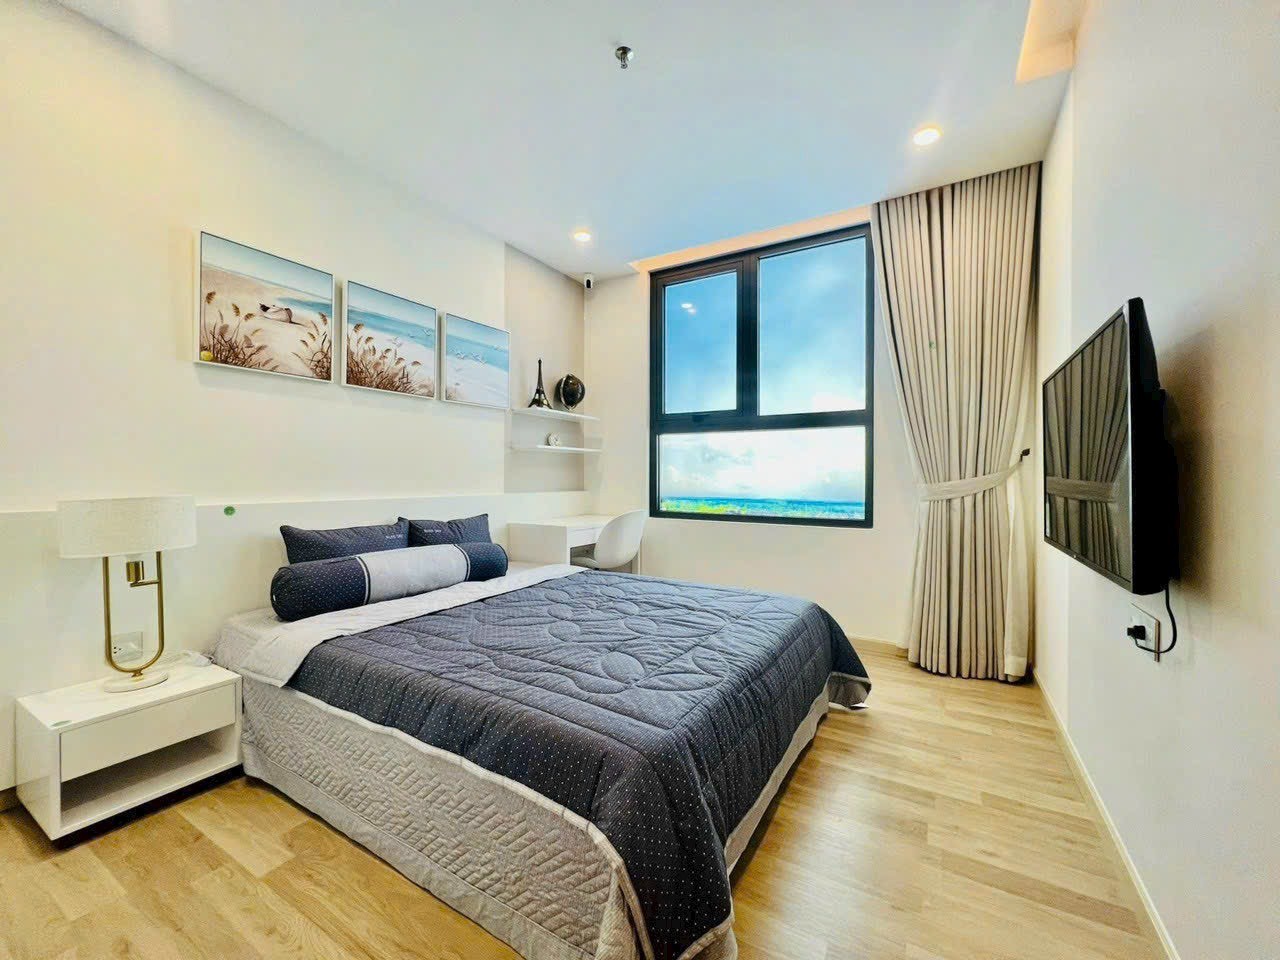 Cần bán căn hộ cao cấp CT1 Riverside Luxury Nha Trang, chuẩn sống cho người hiện đại 2